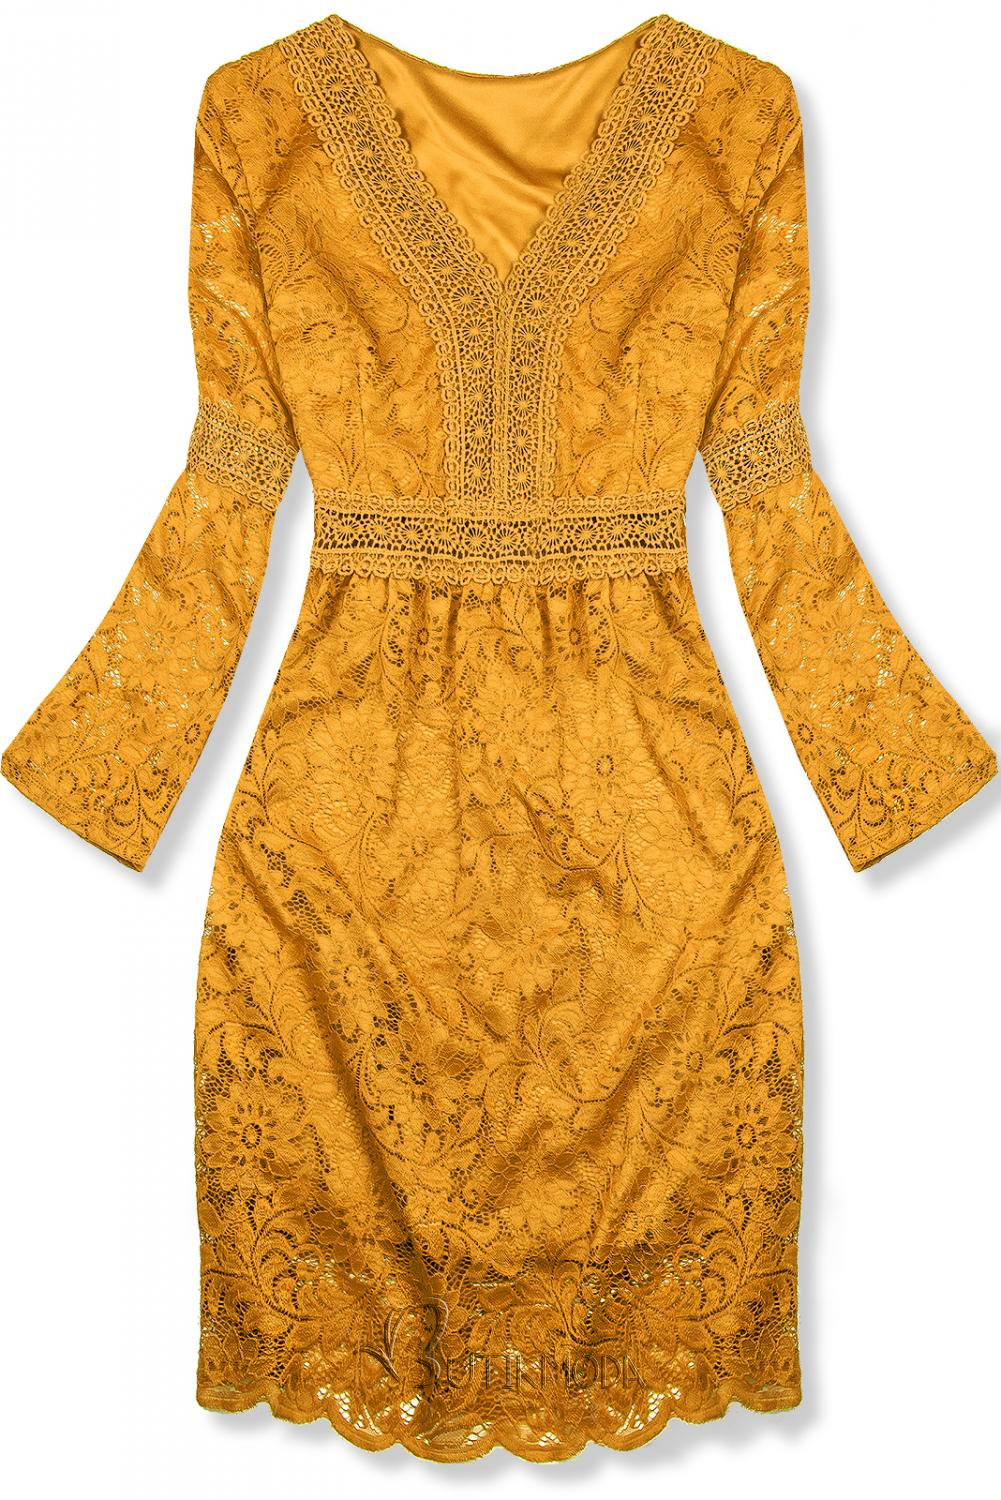 Mustárszárga színű elegáns csipke ruha